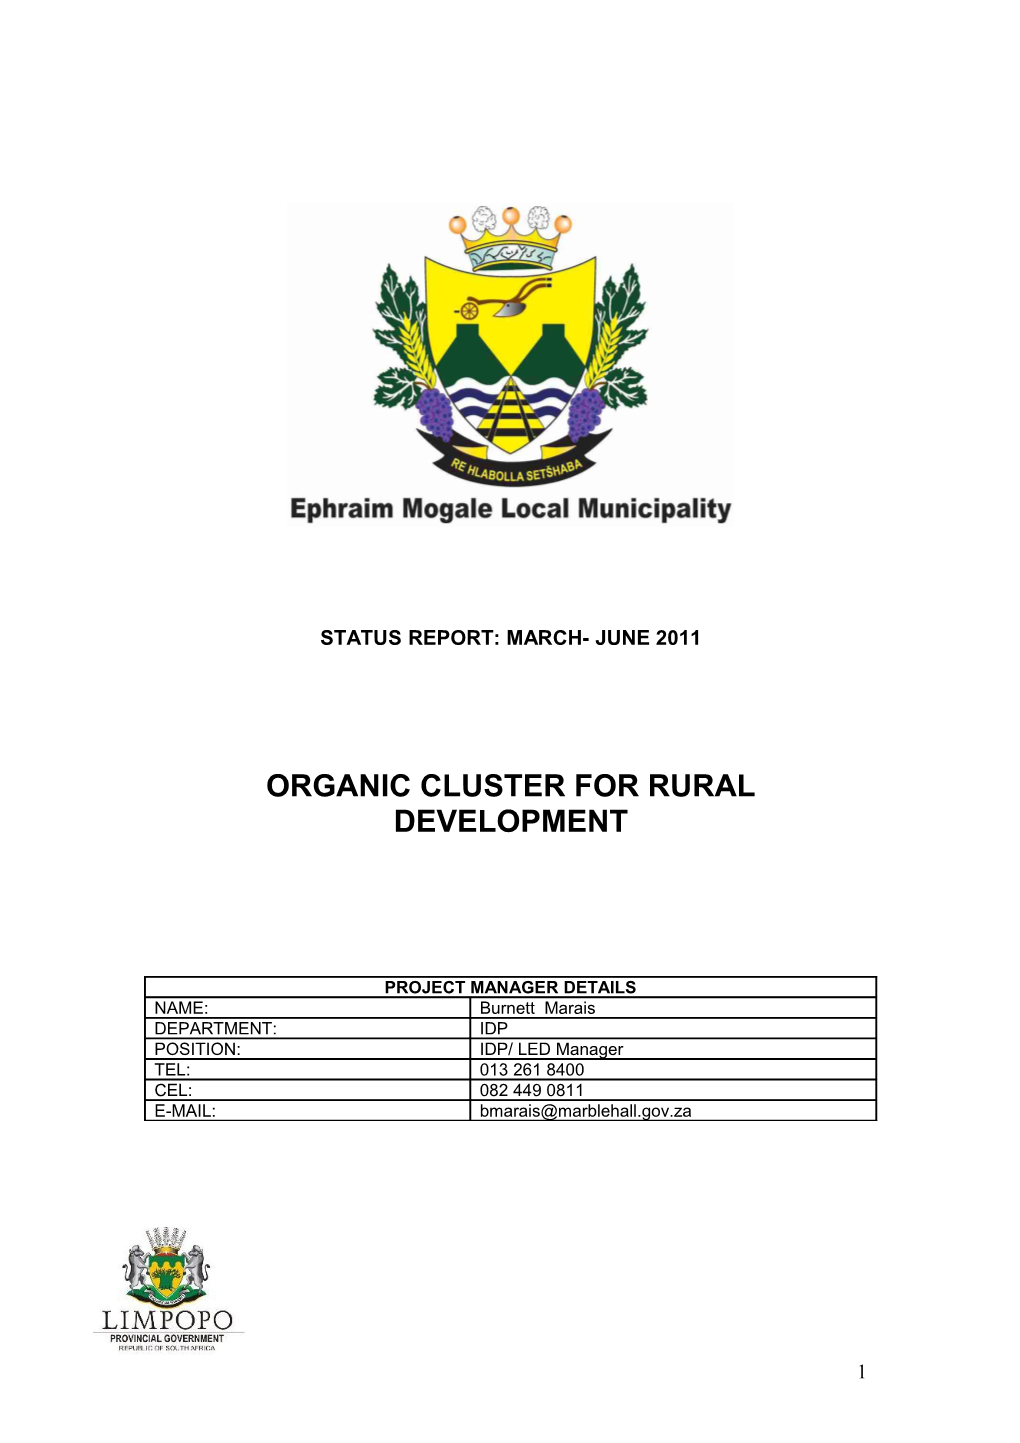 Organic Cluster for Rural Development